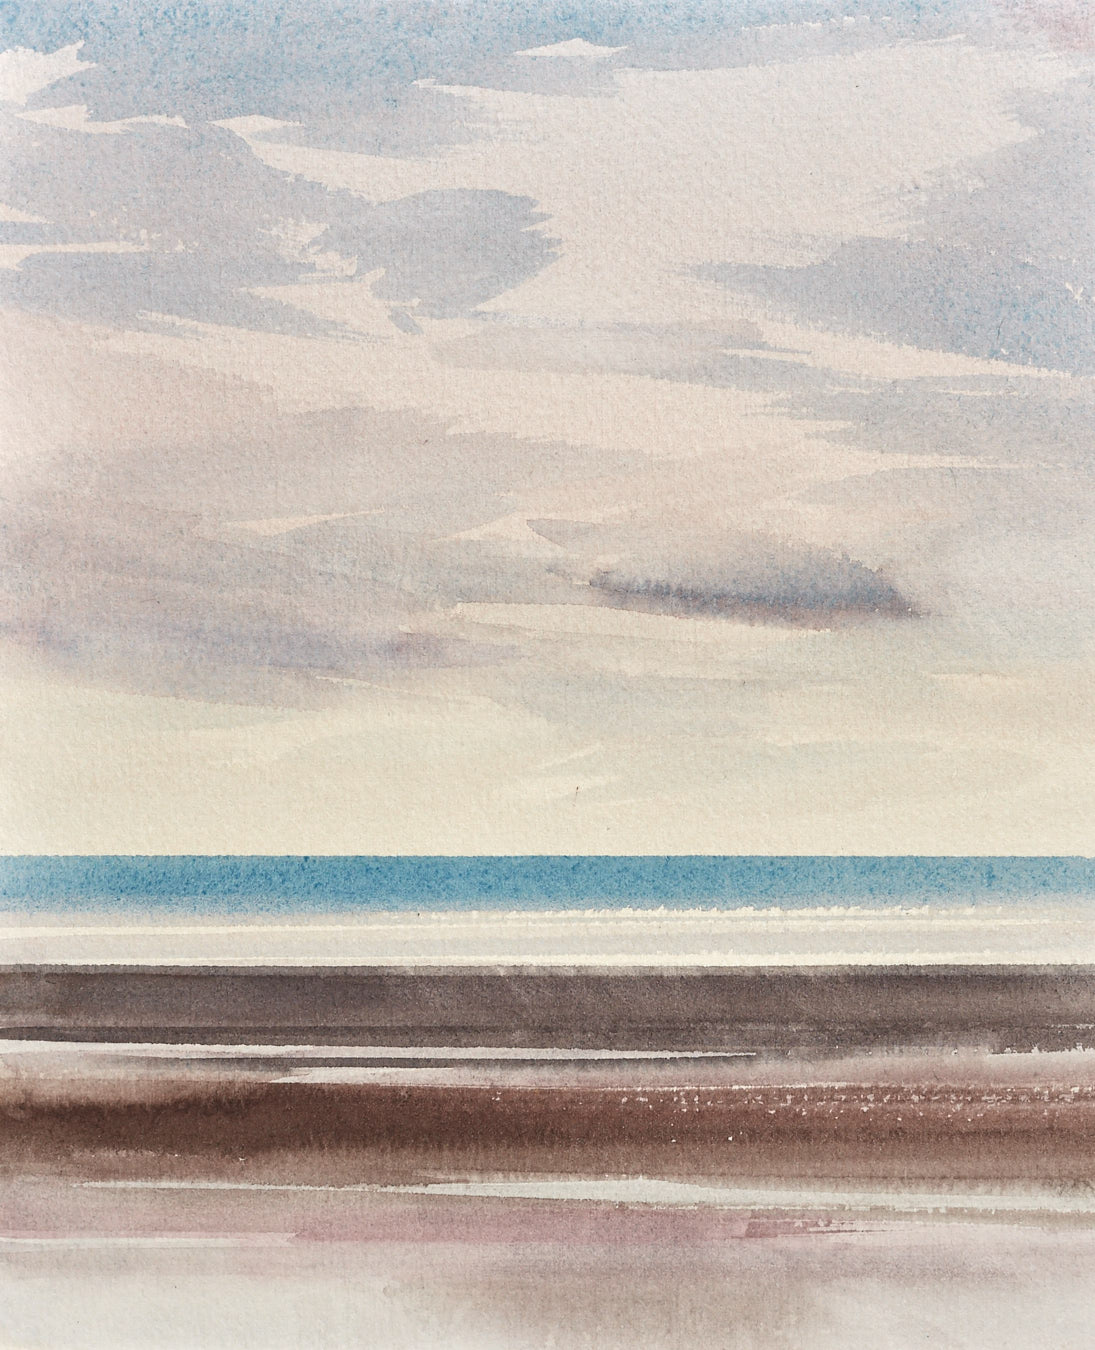 Large image of Sunlit tide, Lytham St Annes original watercolour painting